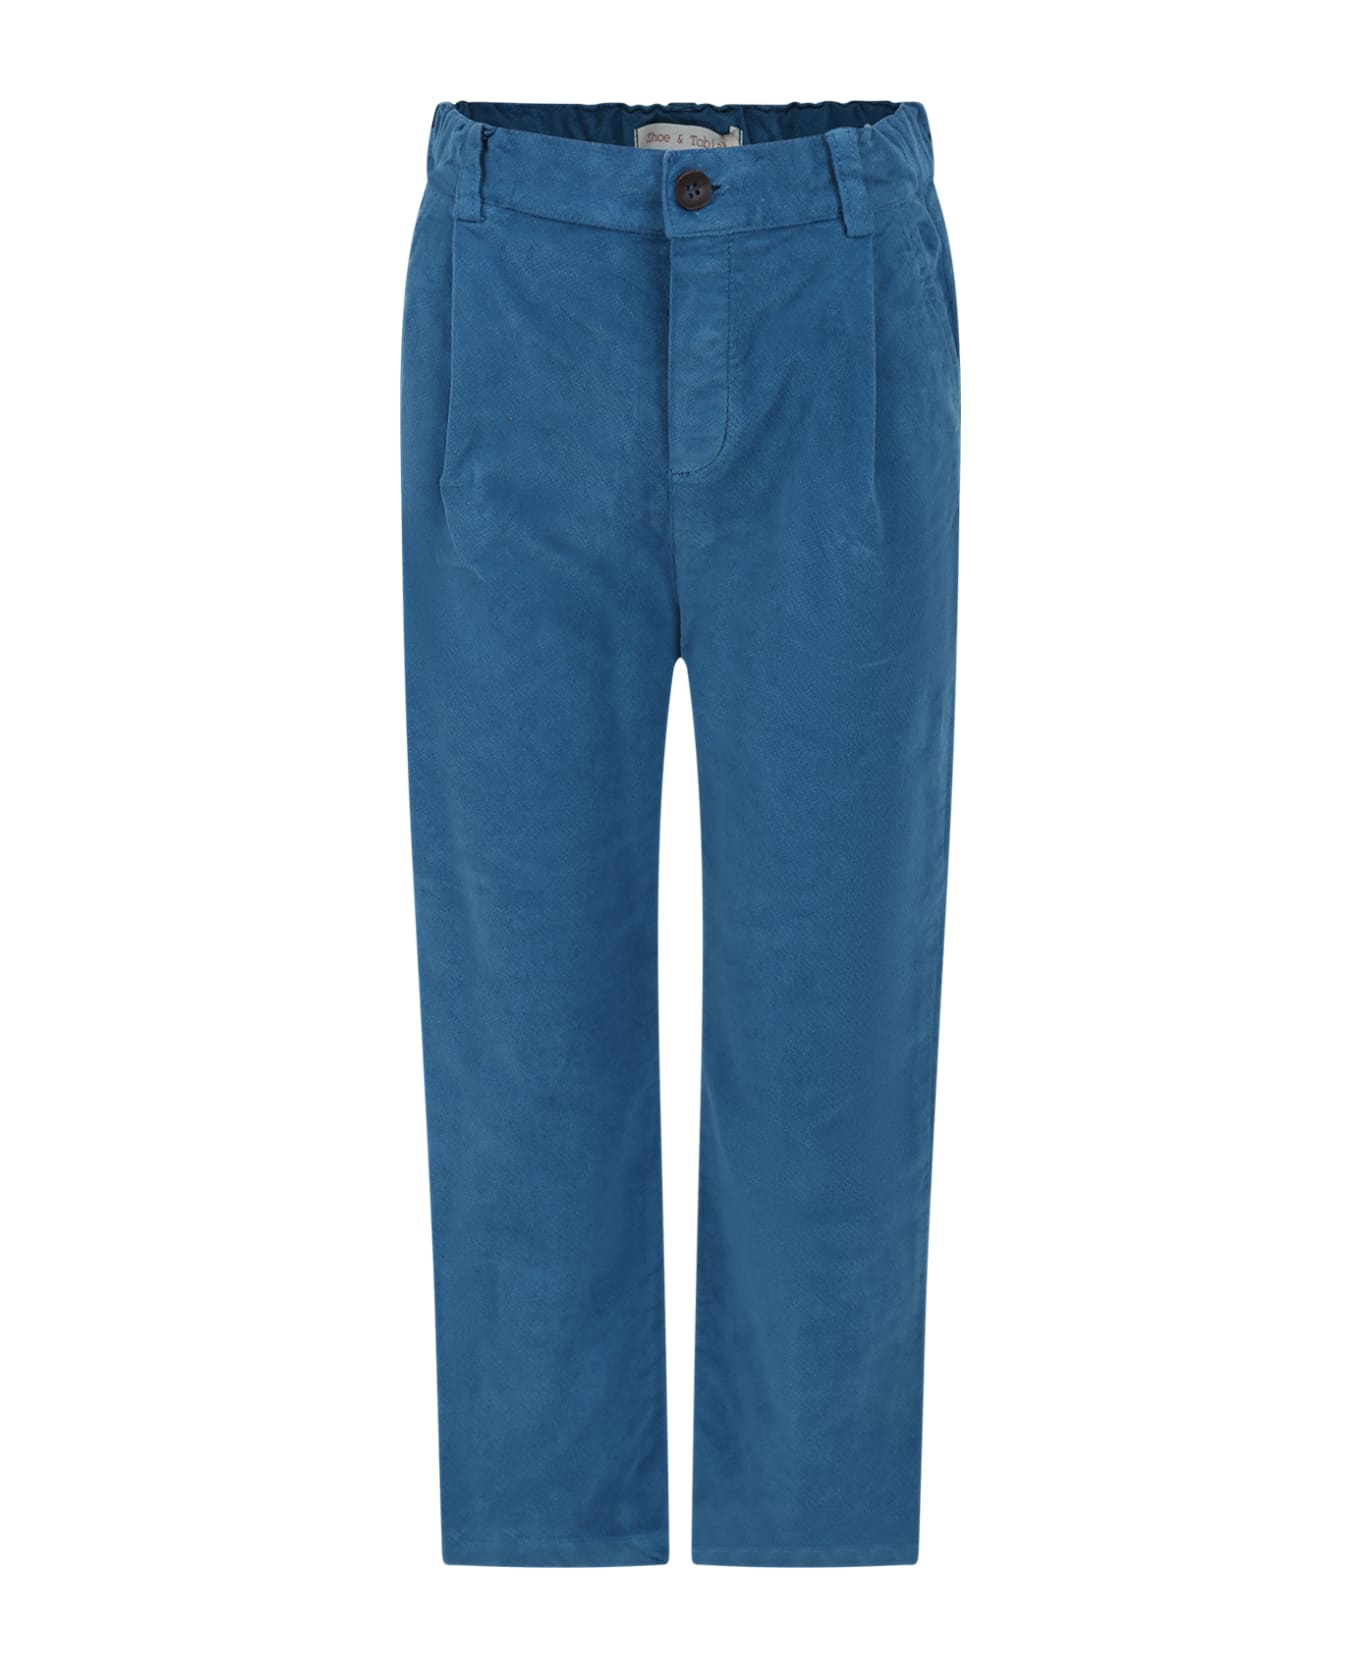 Zhoe & Tobiah Light Blue Trousers Kids For Boy - Light Blue